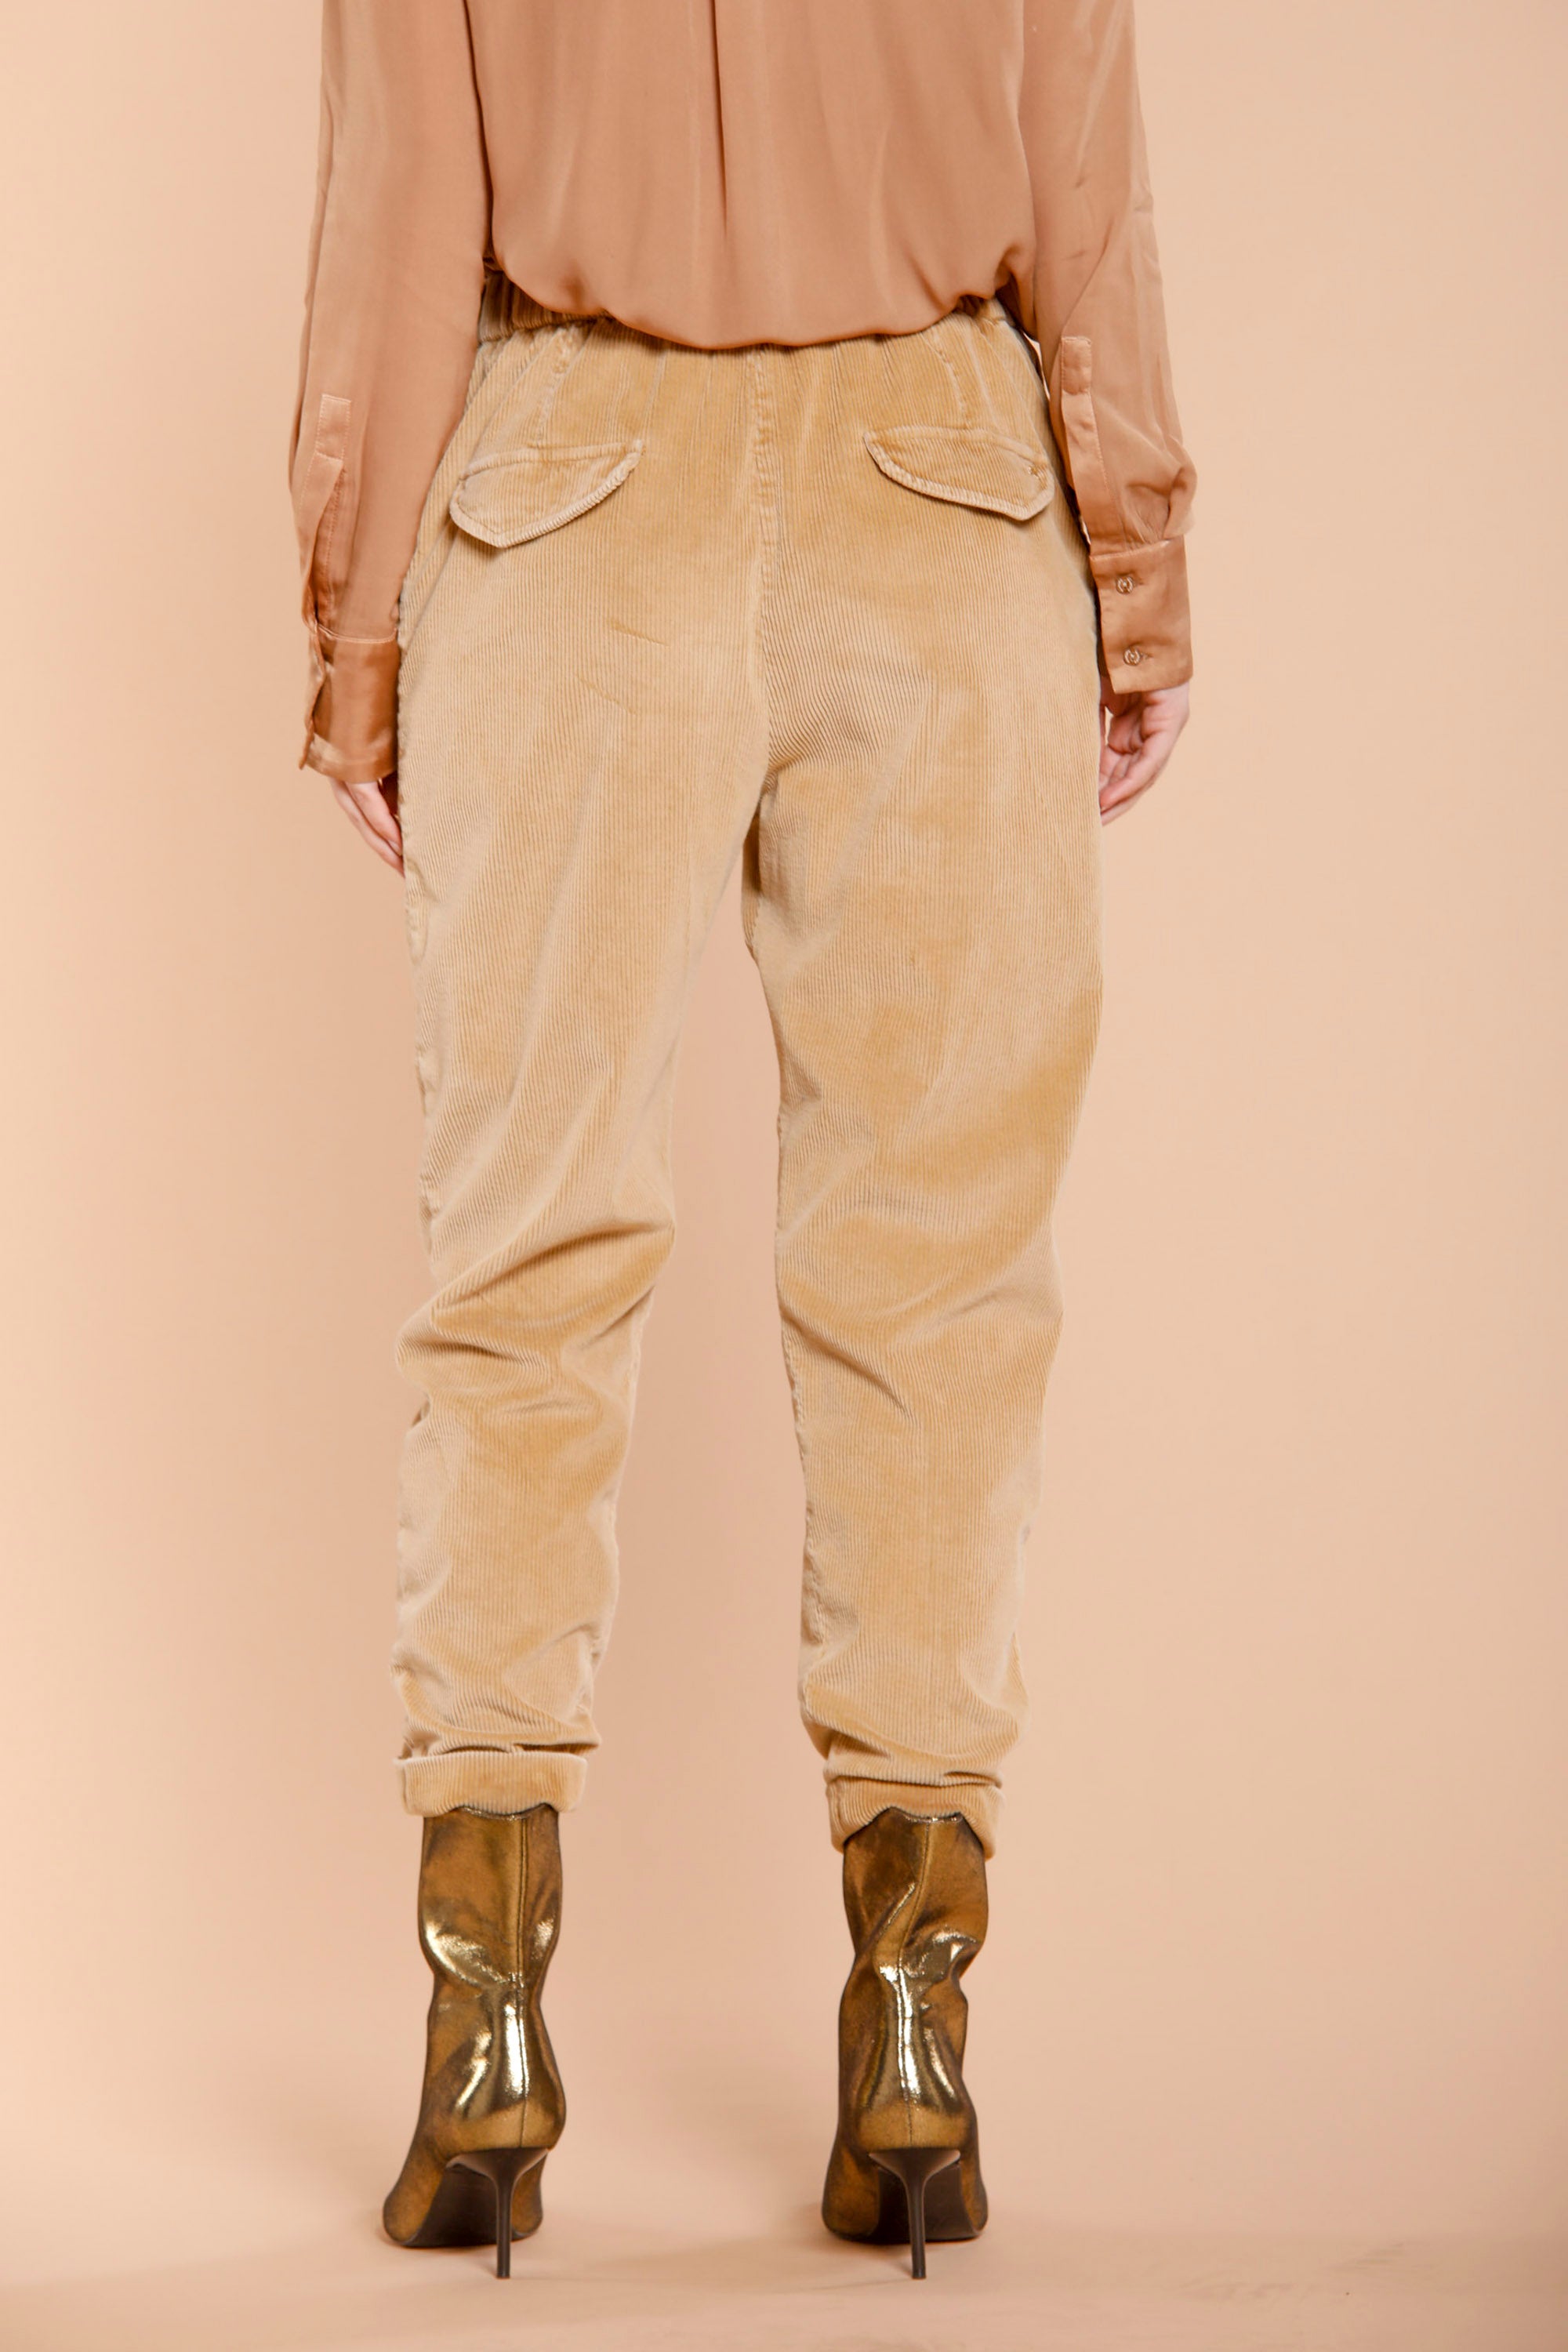 Image 5 du pantalon chino femme en velours côtelé noisette modèle Malibu Jogger City de Mason's